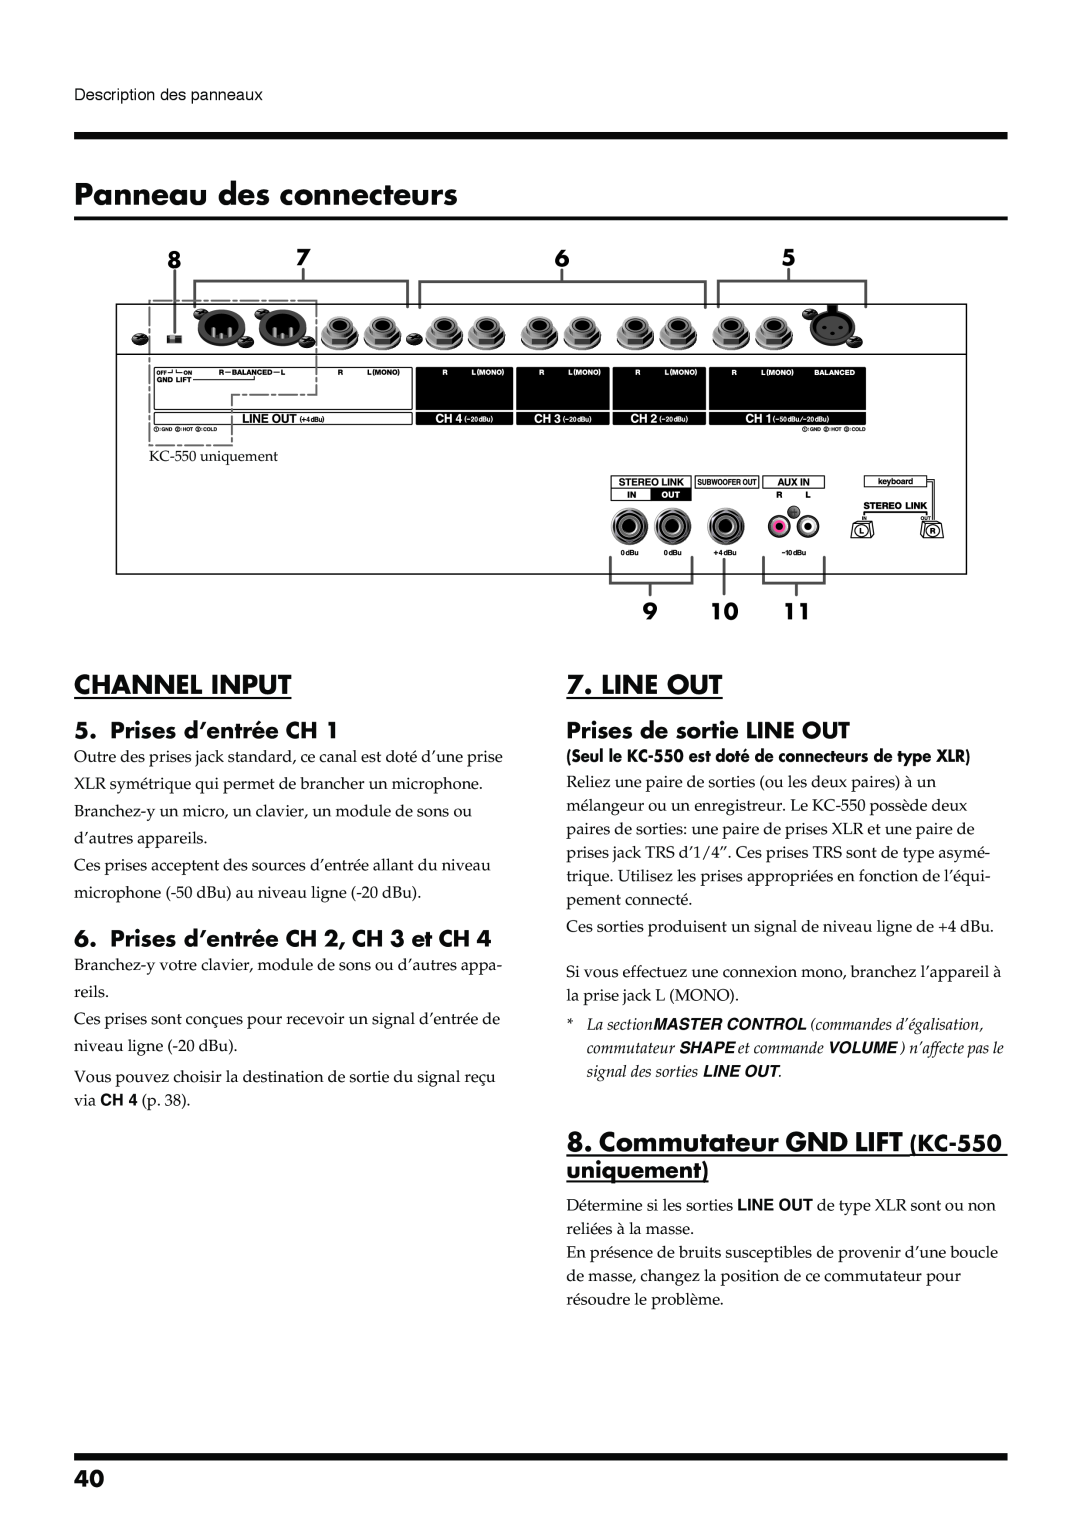 Roland KC-350 manual Panneau des connecteurs, Channel Input, Line Out, Commutateur GND LIFT KC-550 